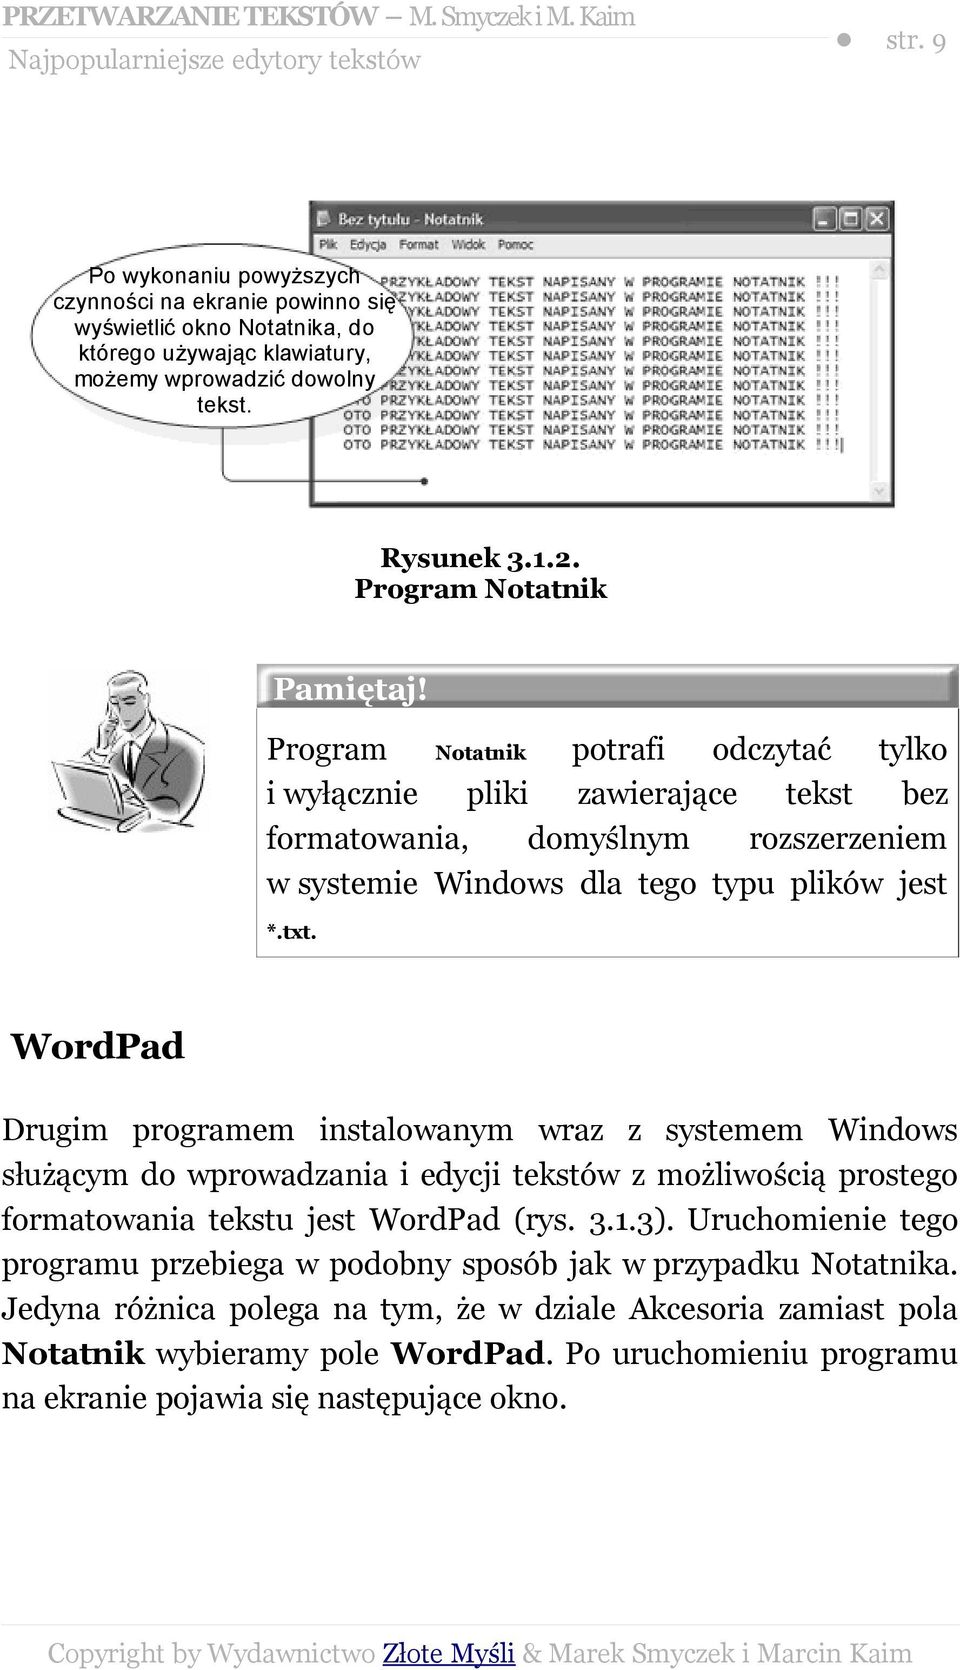 txt. WordPad Drugim programem instalowanym wraz z systemem Windows służącym do wprowadzania i edycji tekstów z możliwością prostego formatowania tekstu jest WordPad (rys. 3.1.3).